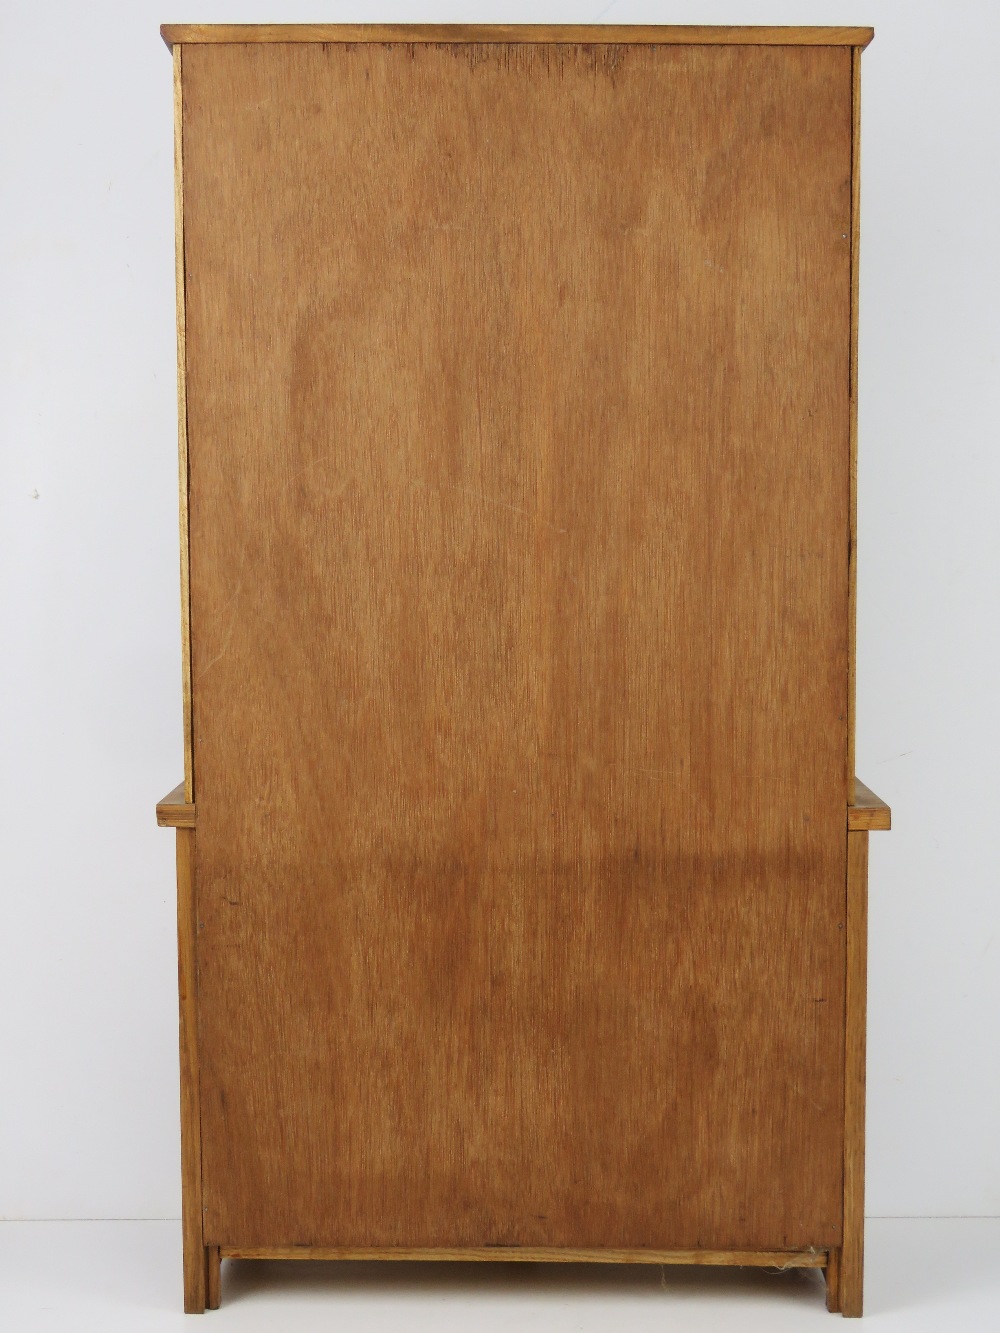 A miniature Welsh dresser standing 72cm high, oak effect. - Image 2 of 3